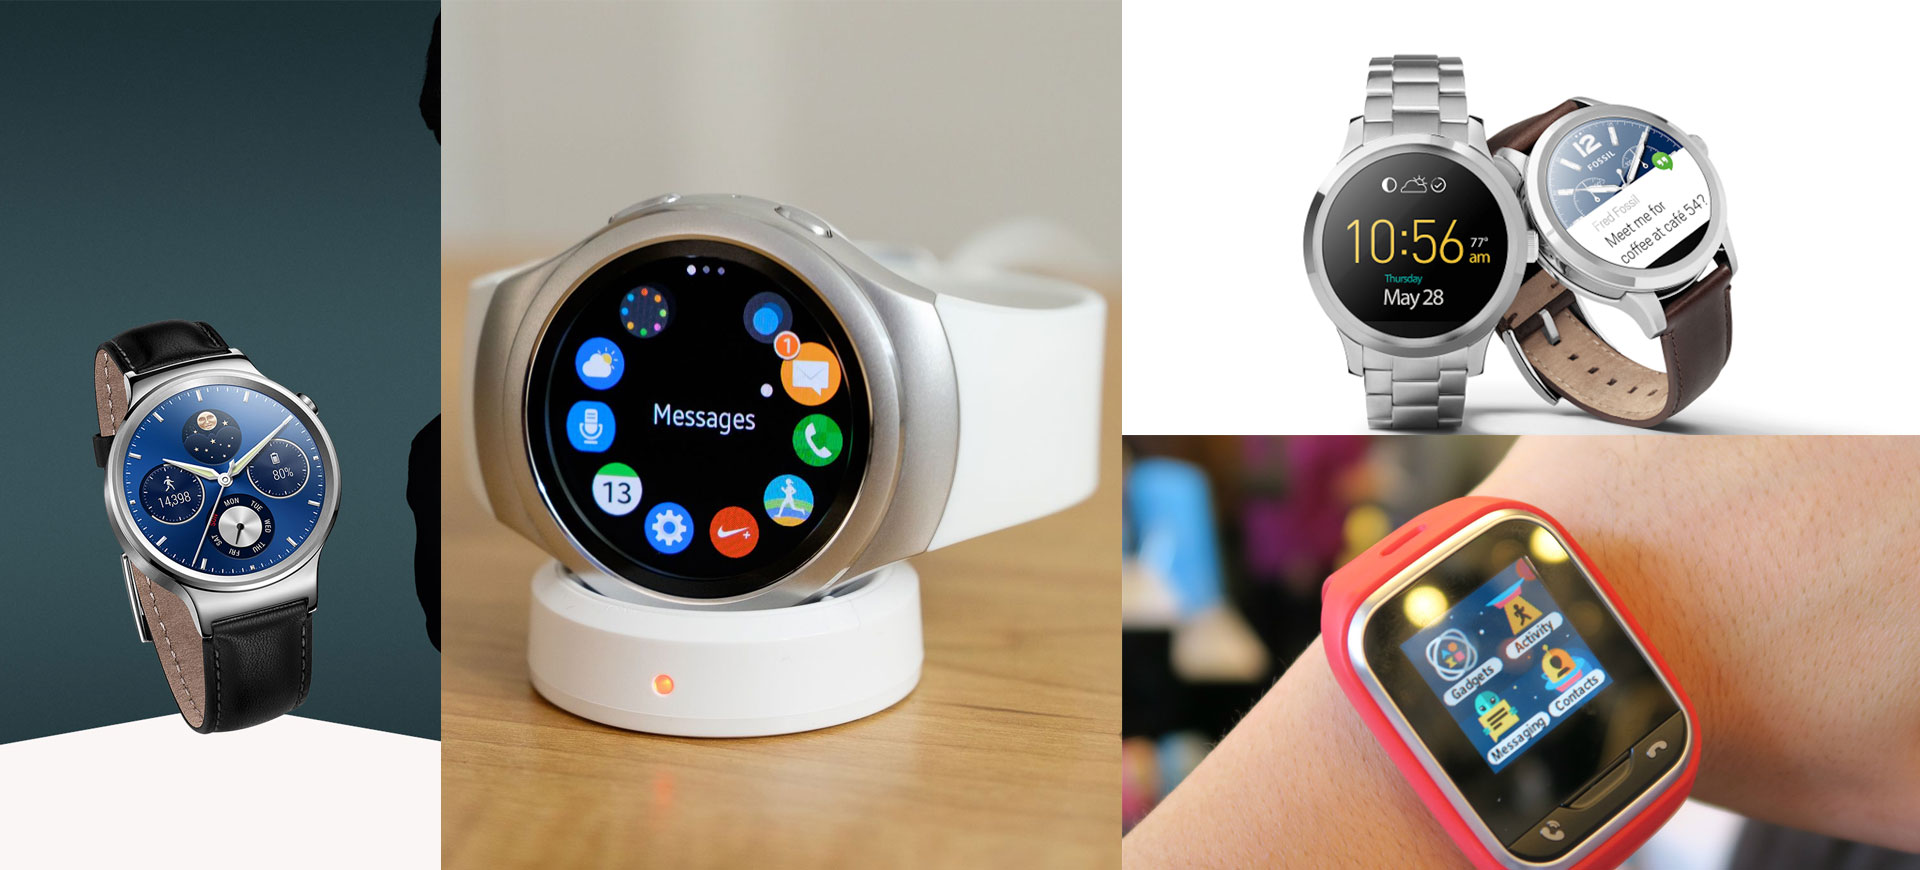 10 best smartwatches 2016